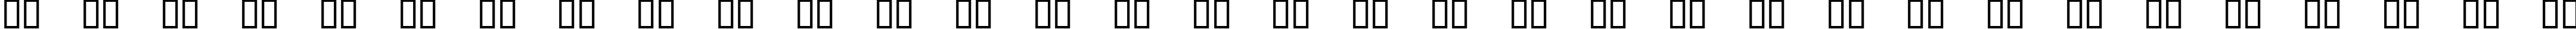 Пример написания русского алфавита шрифтом Lucida Icons